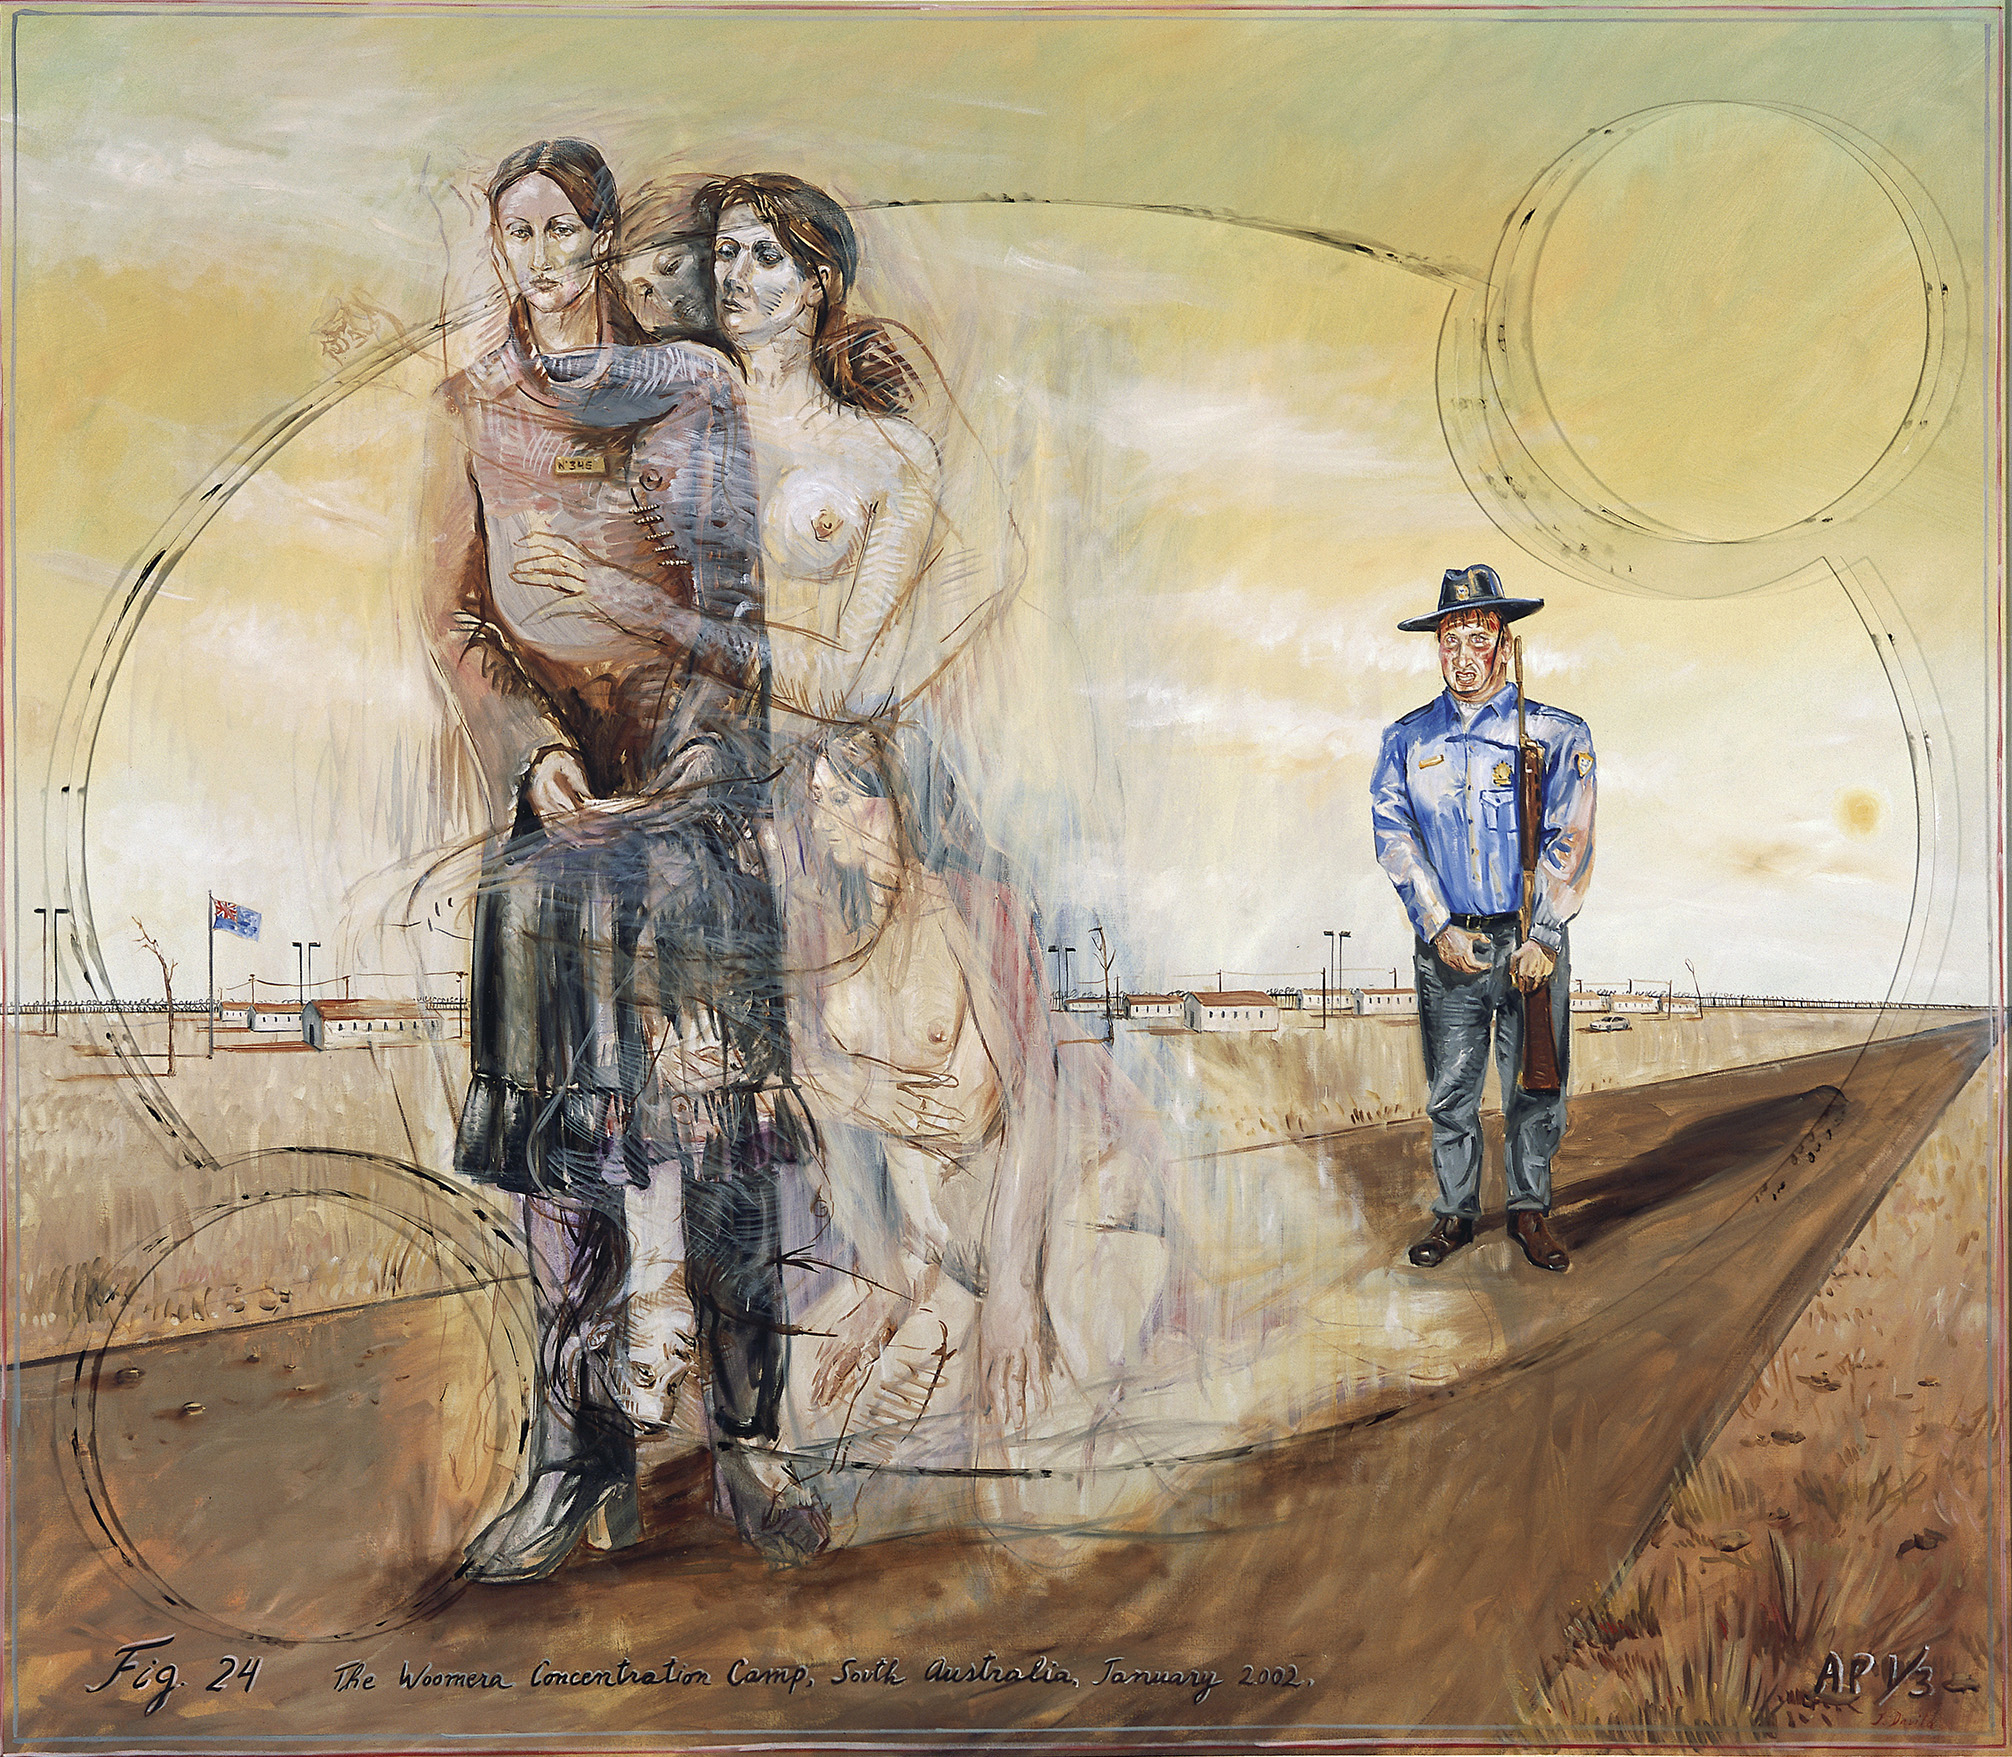 Лагерь Вумера - The Woomera Concentration Camp, 2002. Хуан Давила (Juan Davila) - современный чилийский, австралийский художник. Современное искусство Чили, искусство Австралии